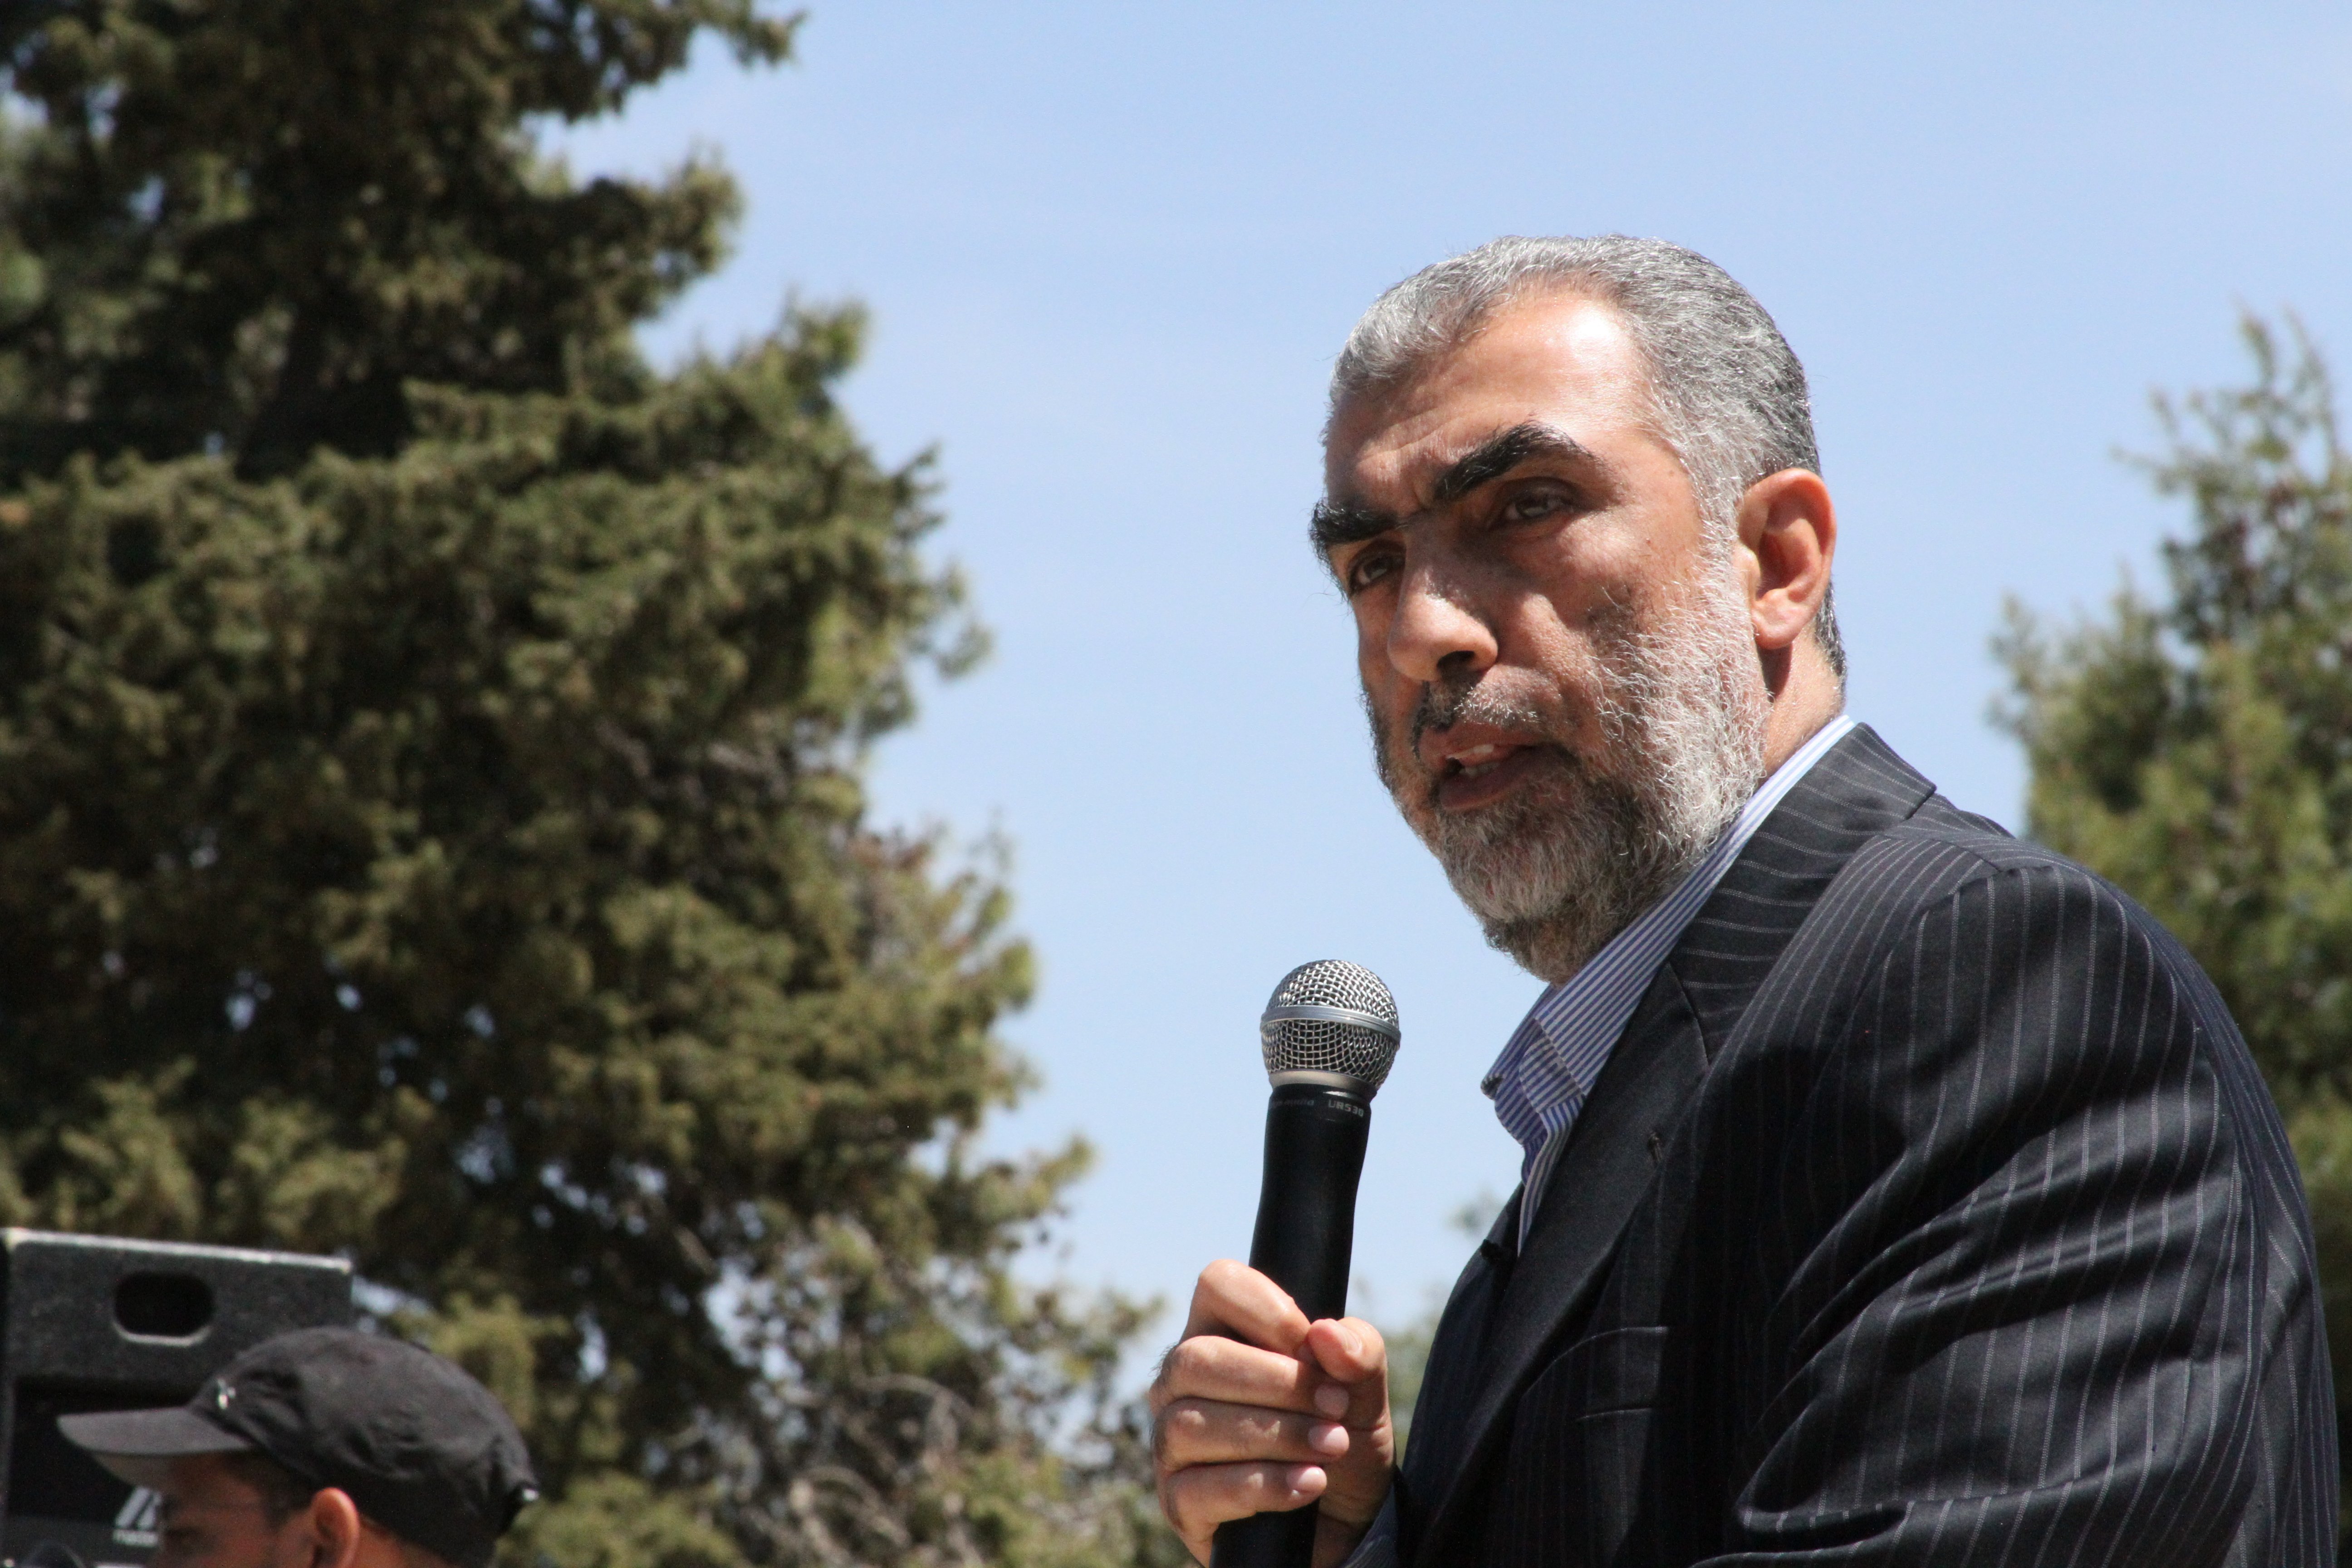  كمال الخطيب نائب رئيس الحركة الاسلامية في الداخل المحتل